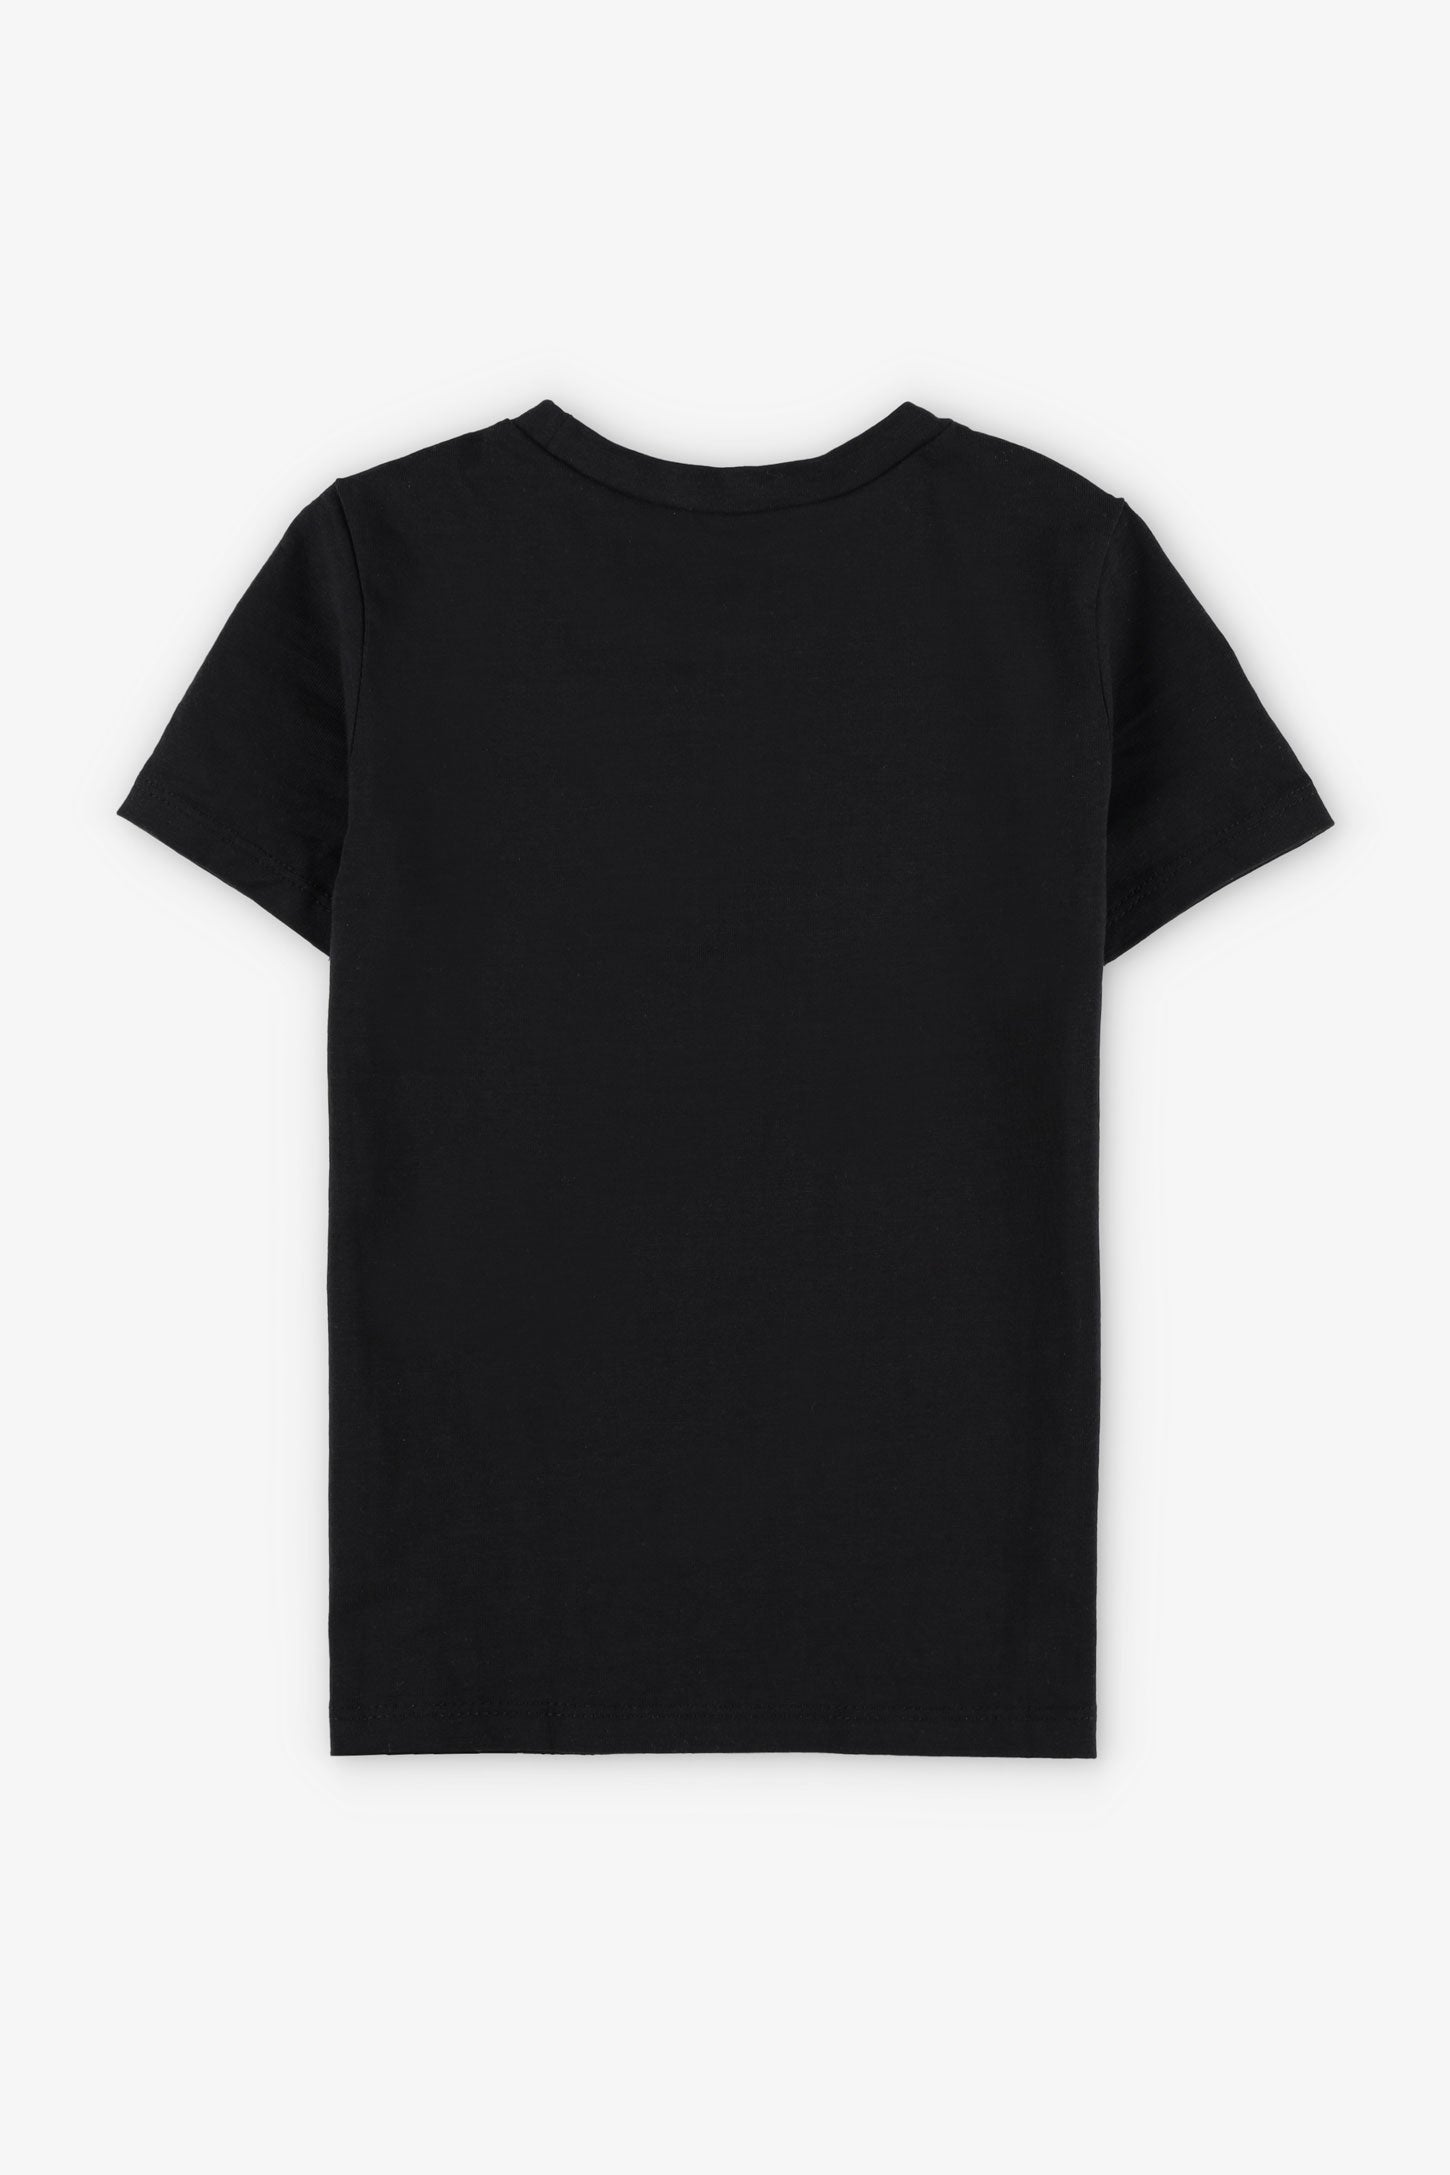 T-shirt col rond imprimé, 2/20$ - Enfant garçon && NOIR